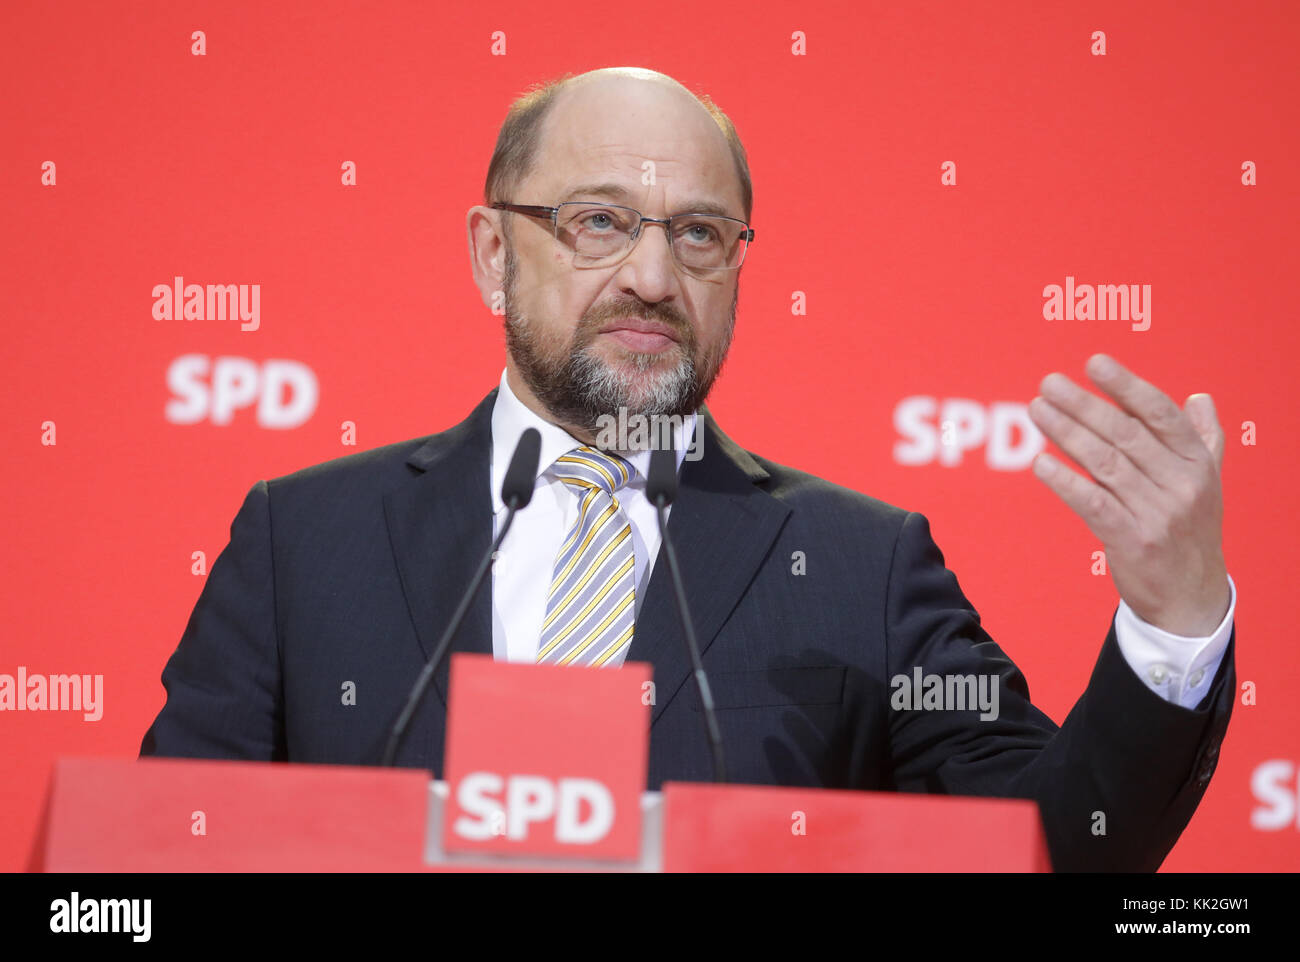 Der SPD-Vorsitzende Martin Schulz spricht auf einer Pressekonferenz am 27.11.2017 in Berlin. Foto: Kay Nietfeld/dpa Stock Photo